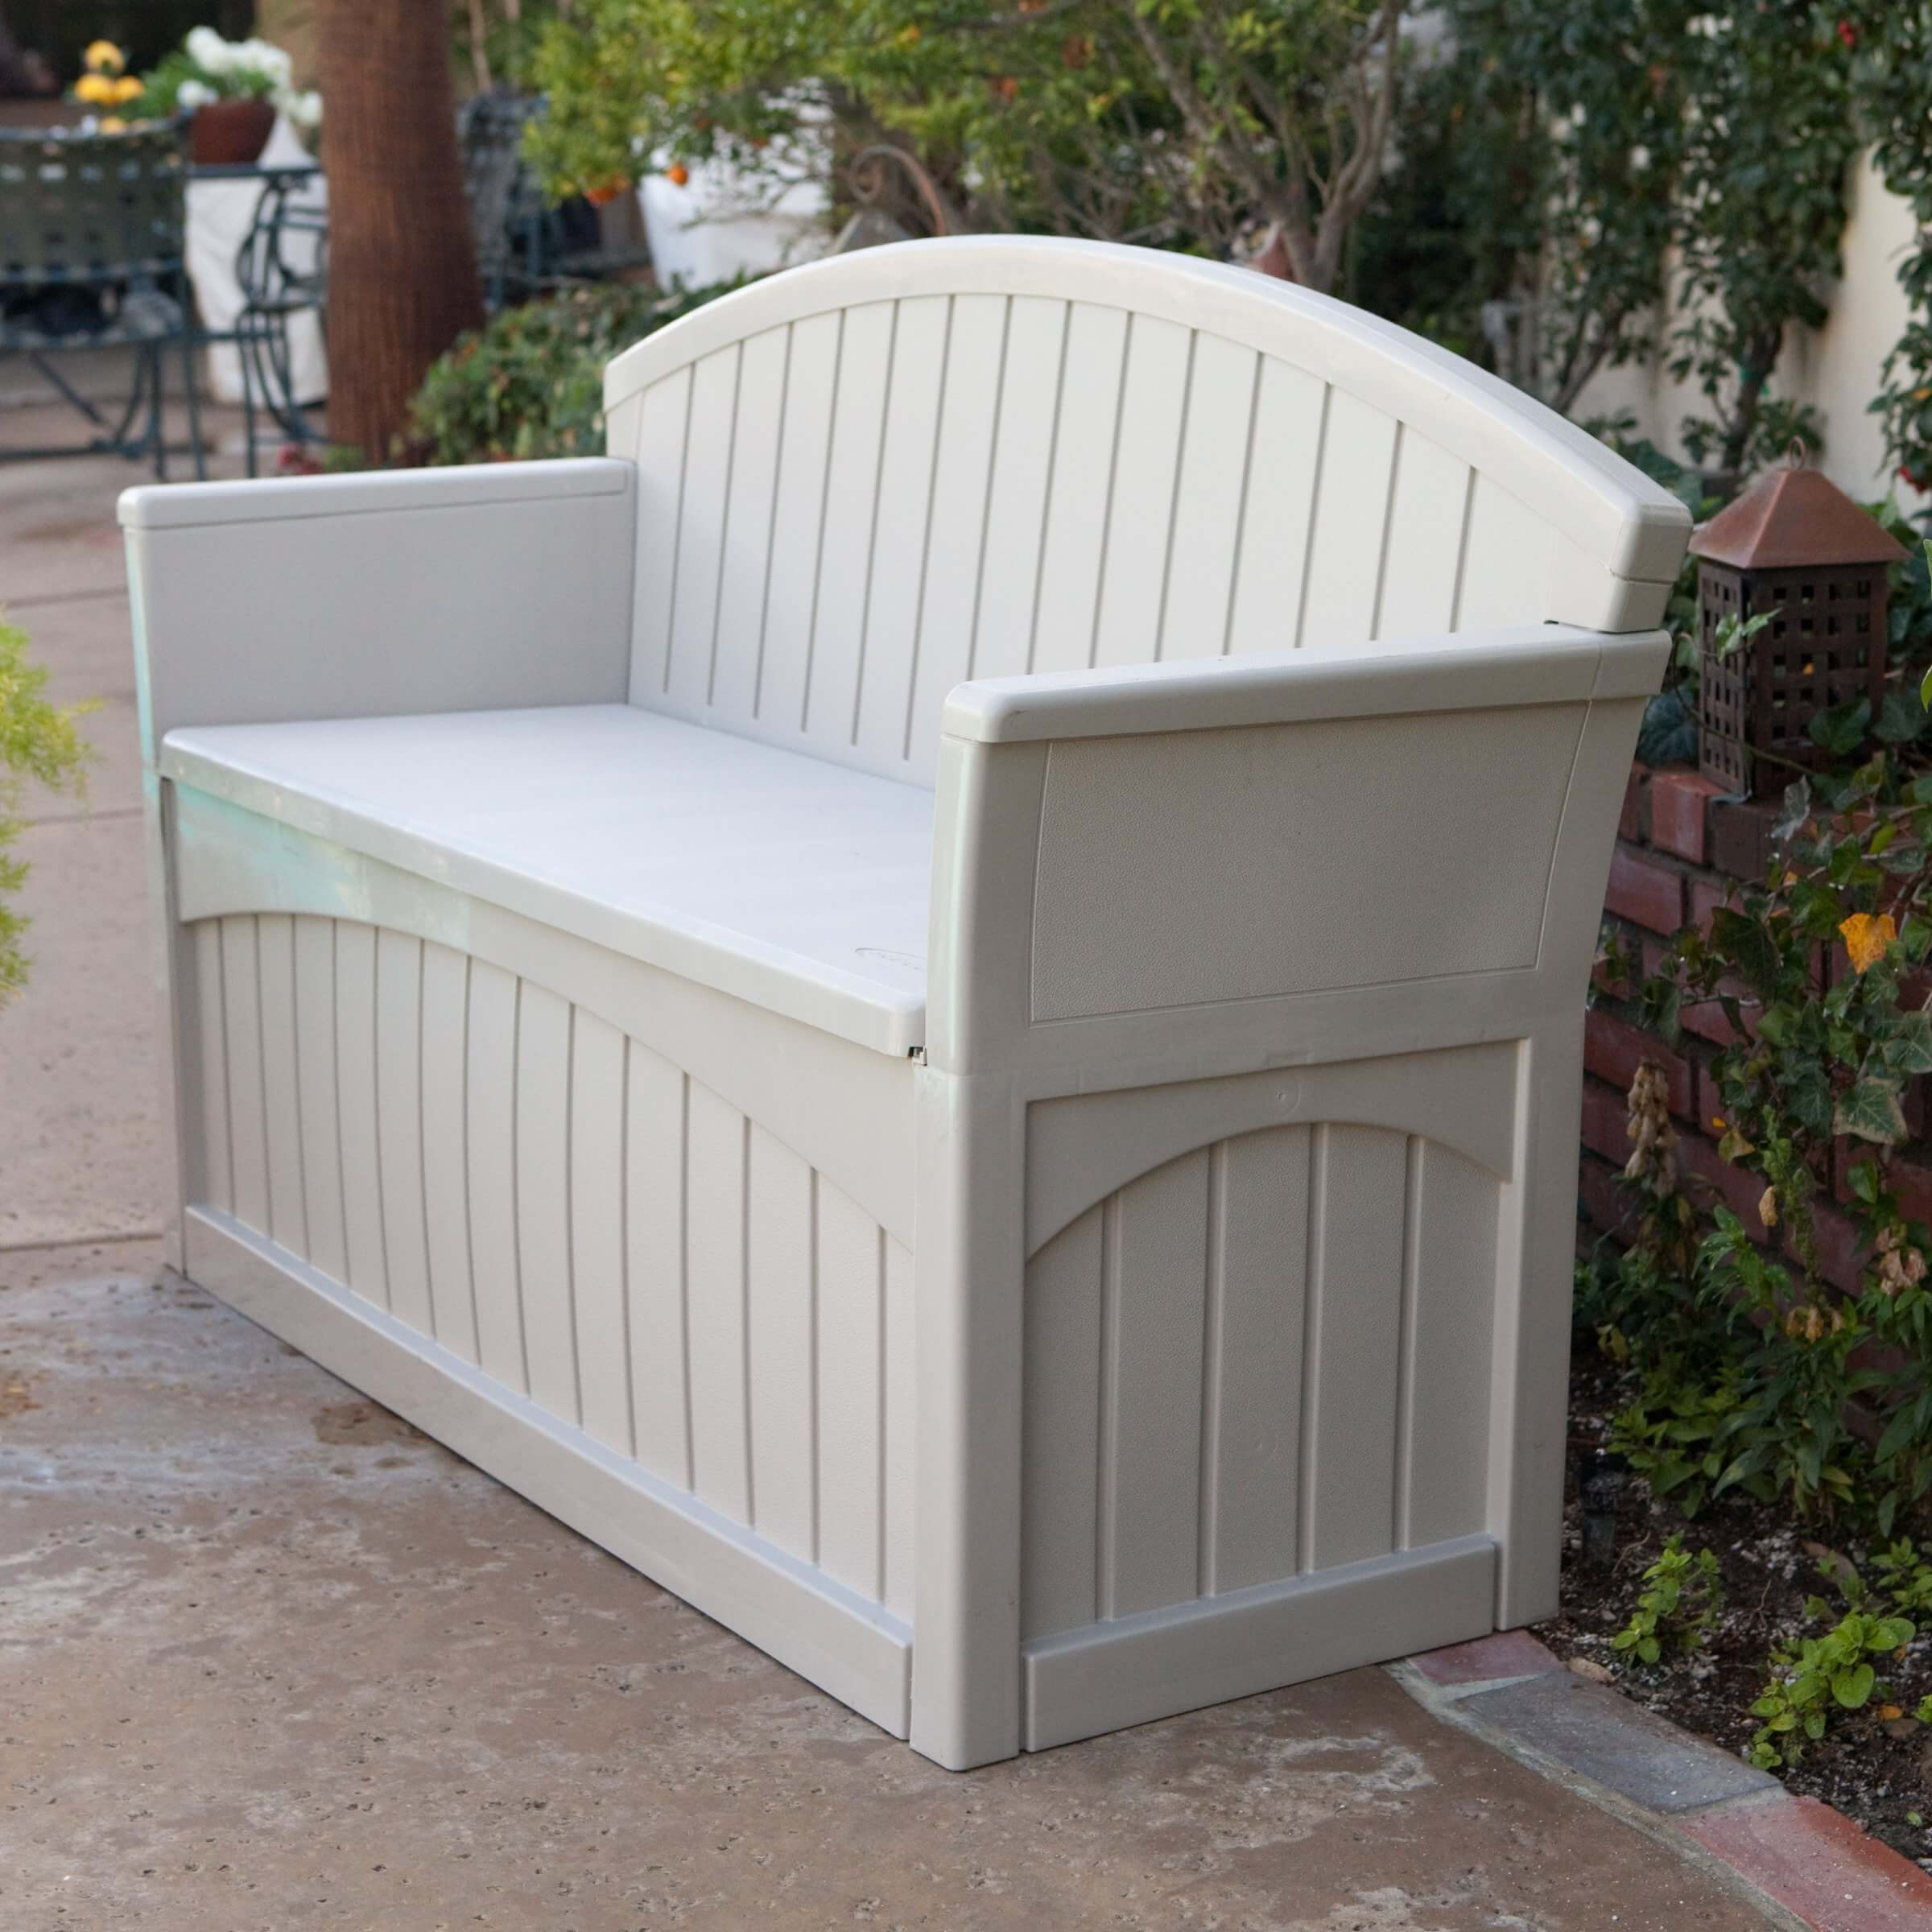 Outdoor Storage Bench Waterproof
 Top 10 Types of Outdoor Deck Storage Boxes